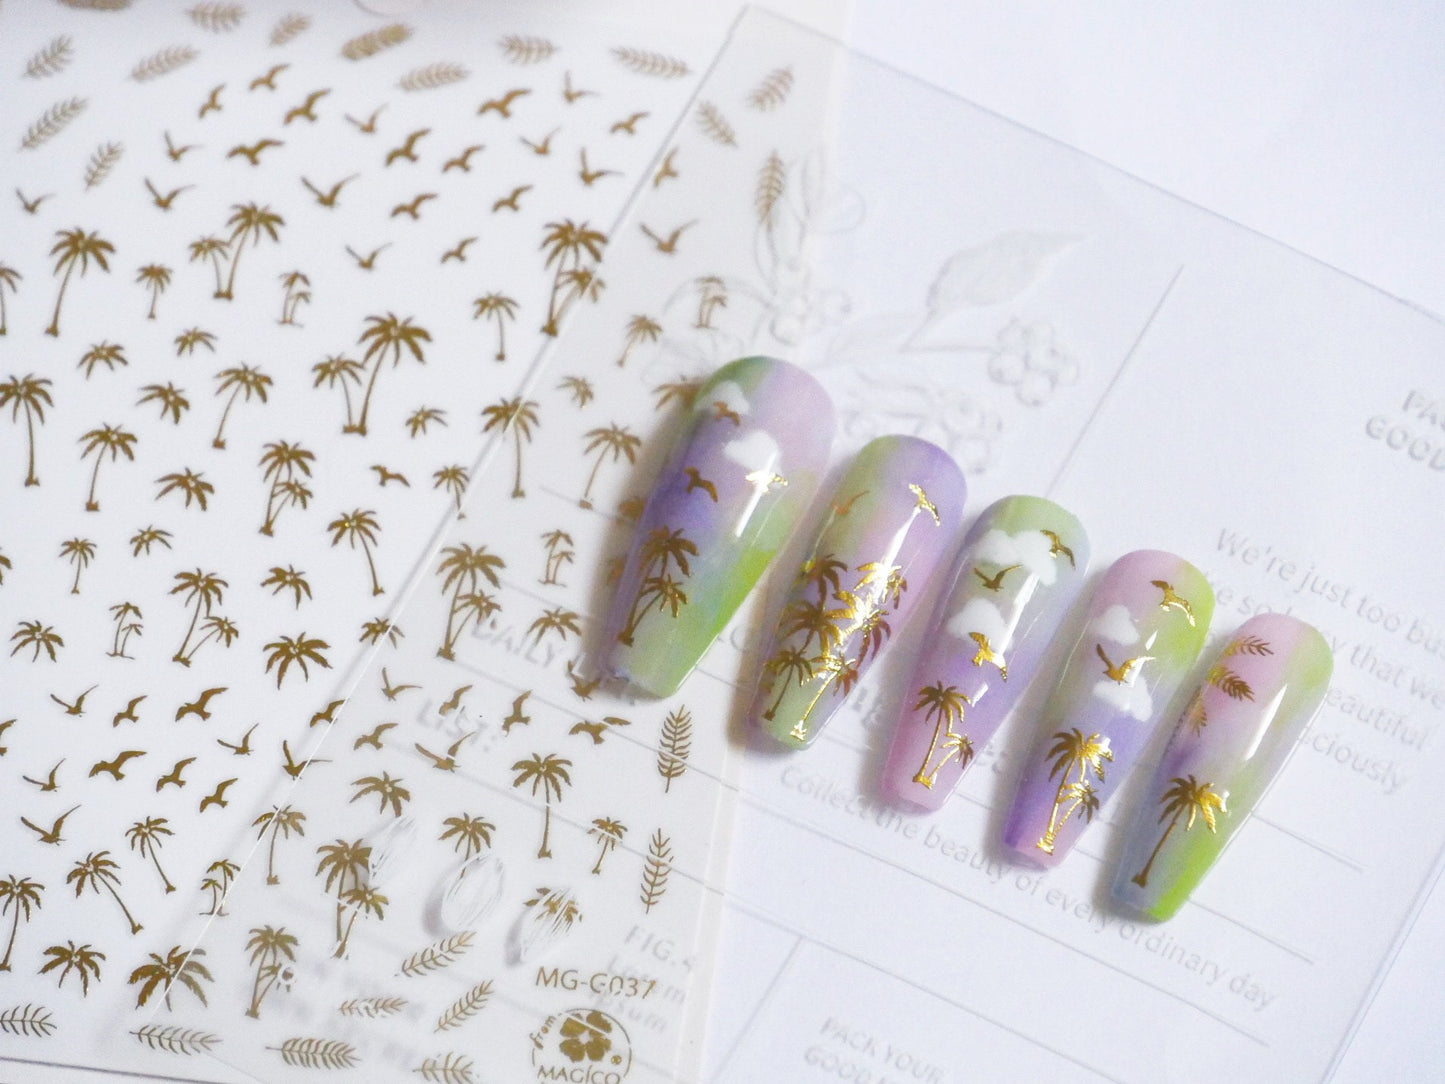 Palm tree Seagull gold nail sticker/ Tropical Summer Beach California Hawaii Island Ocean theme Self Adhesive Decals